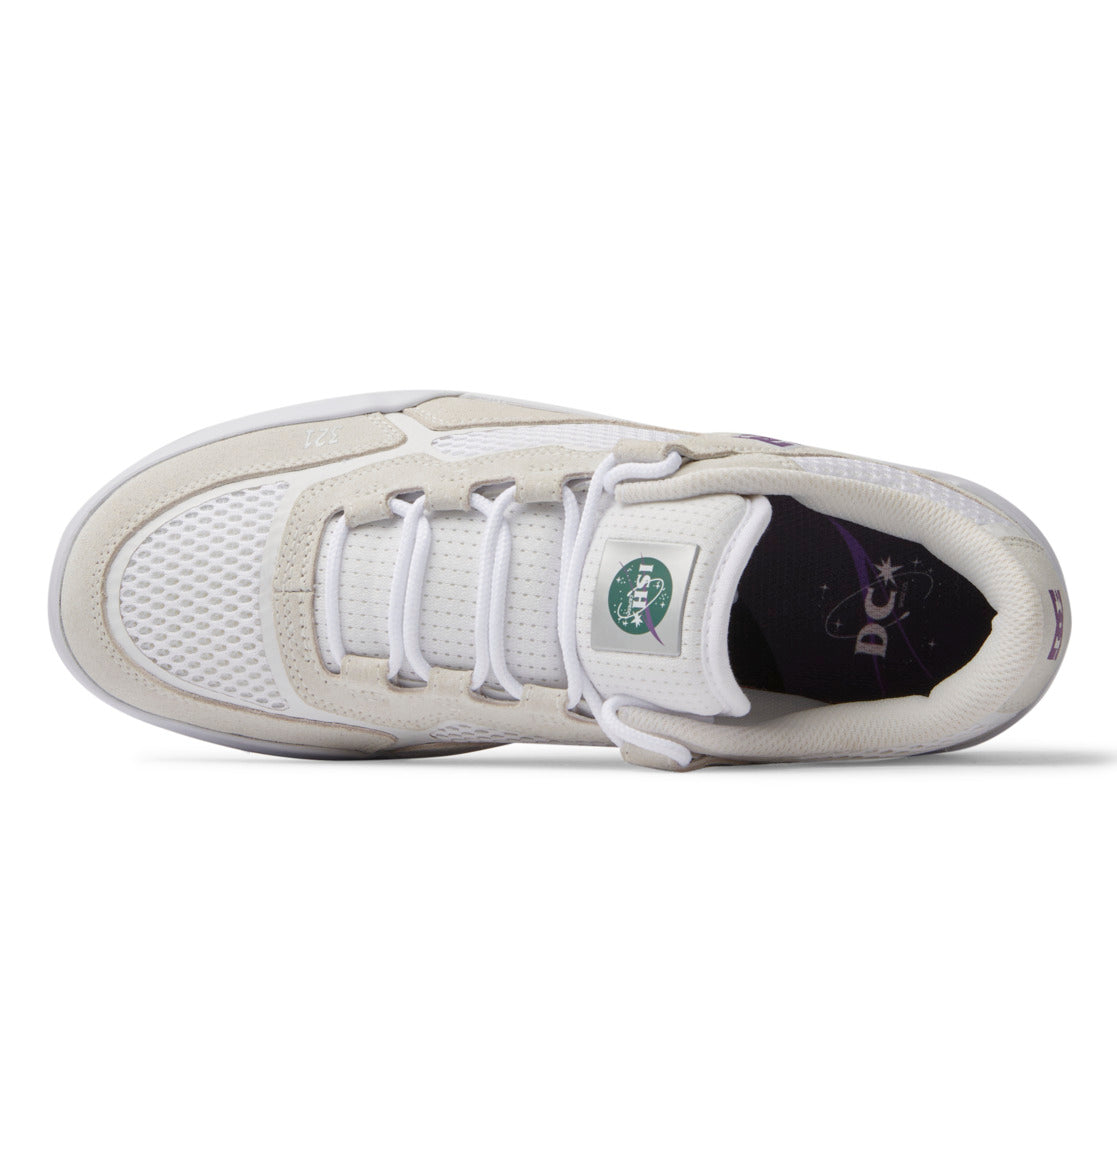 Men's Metric S X Ish Shoes - White/Purple